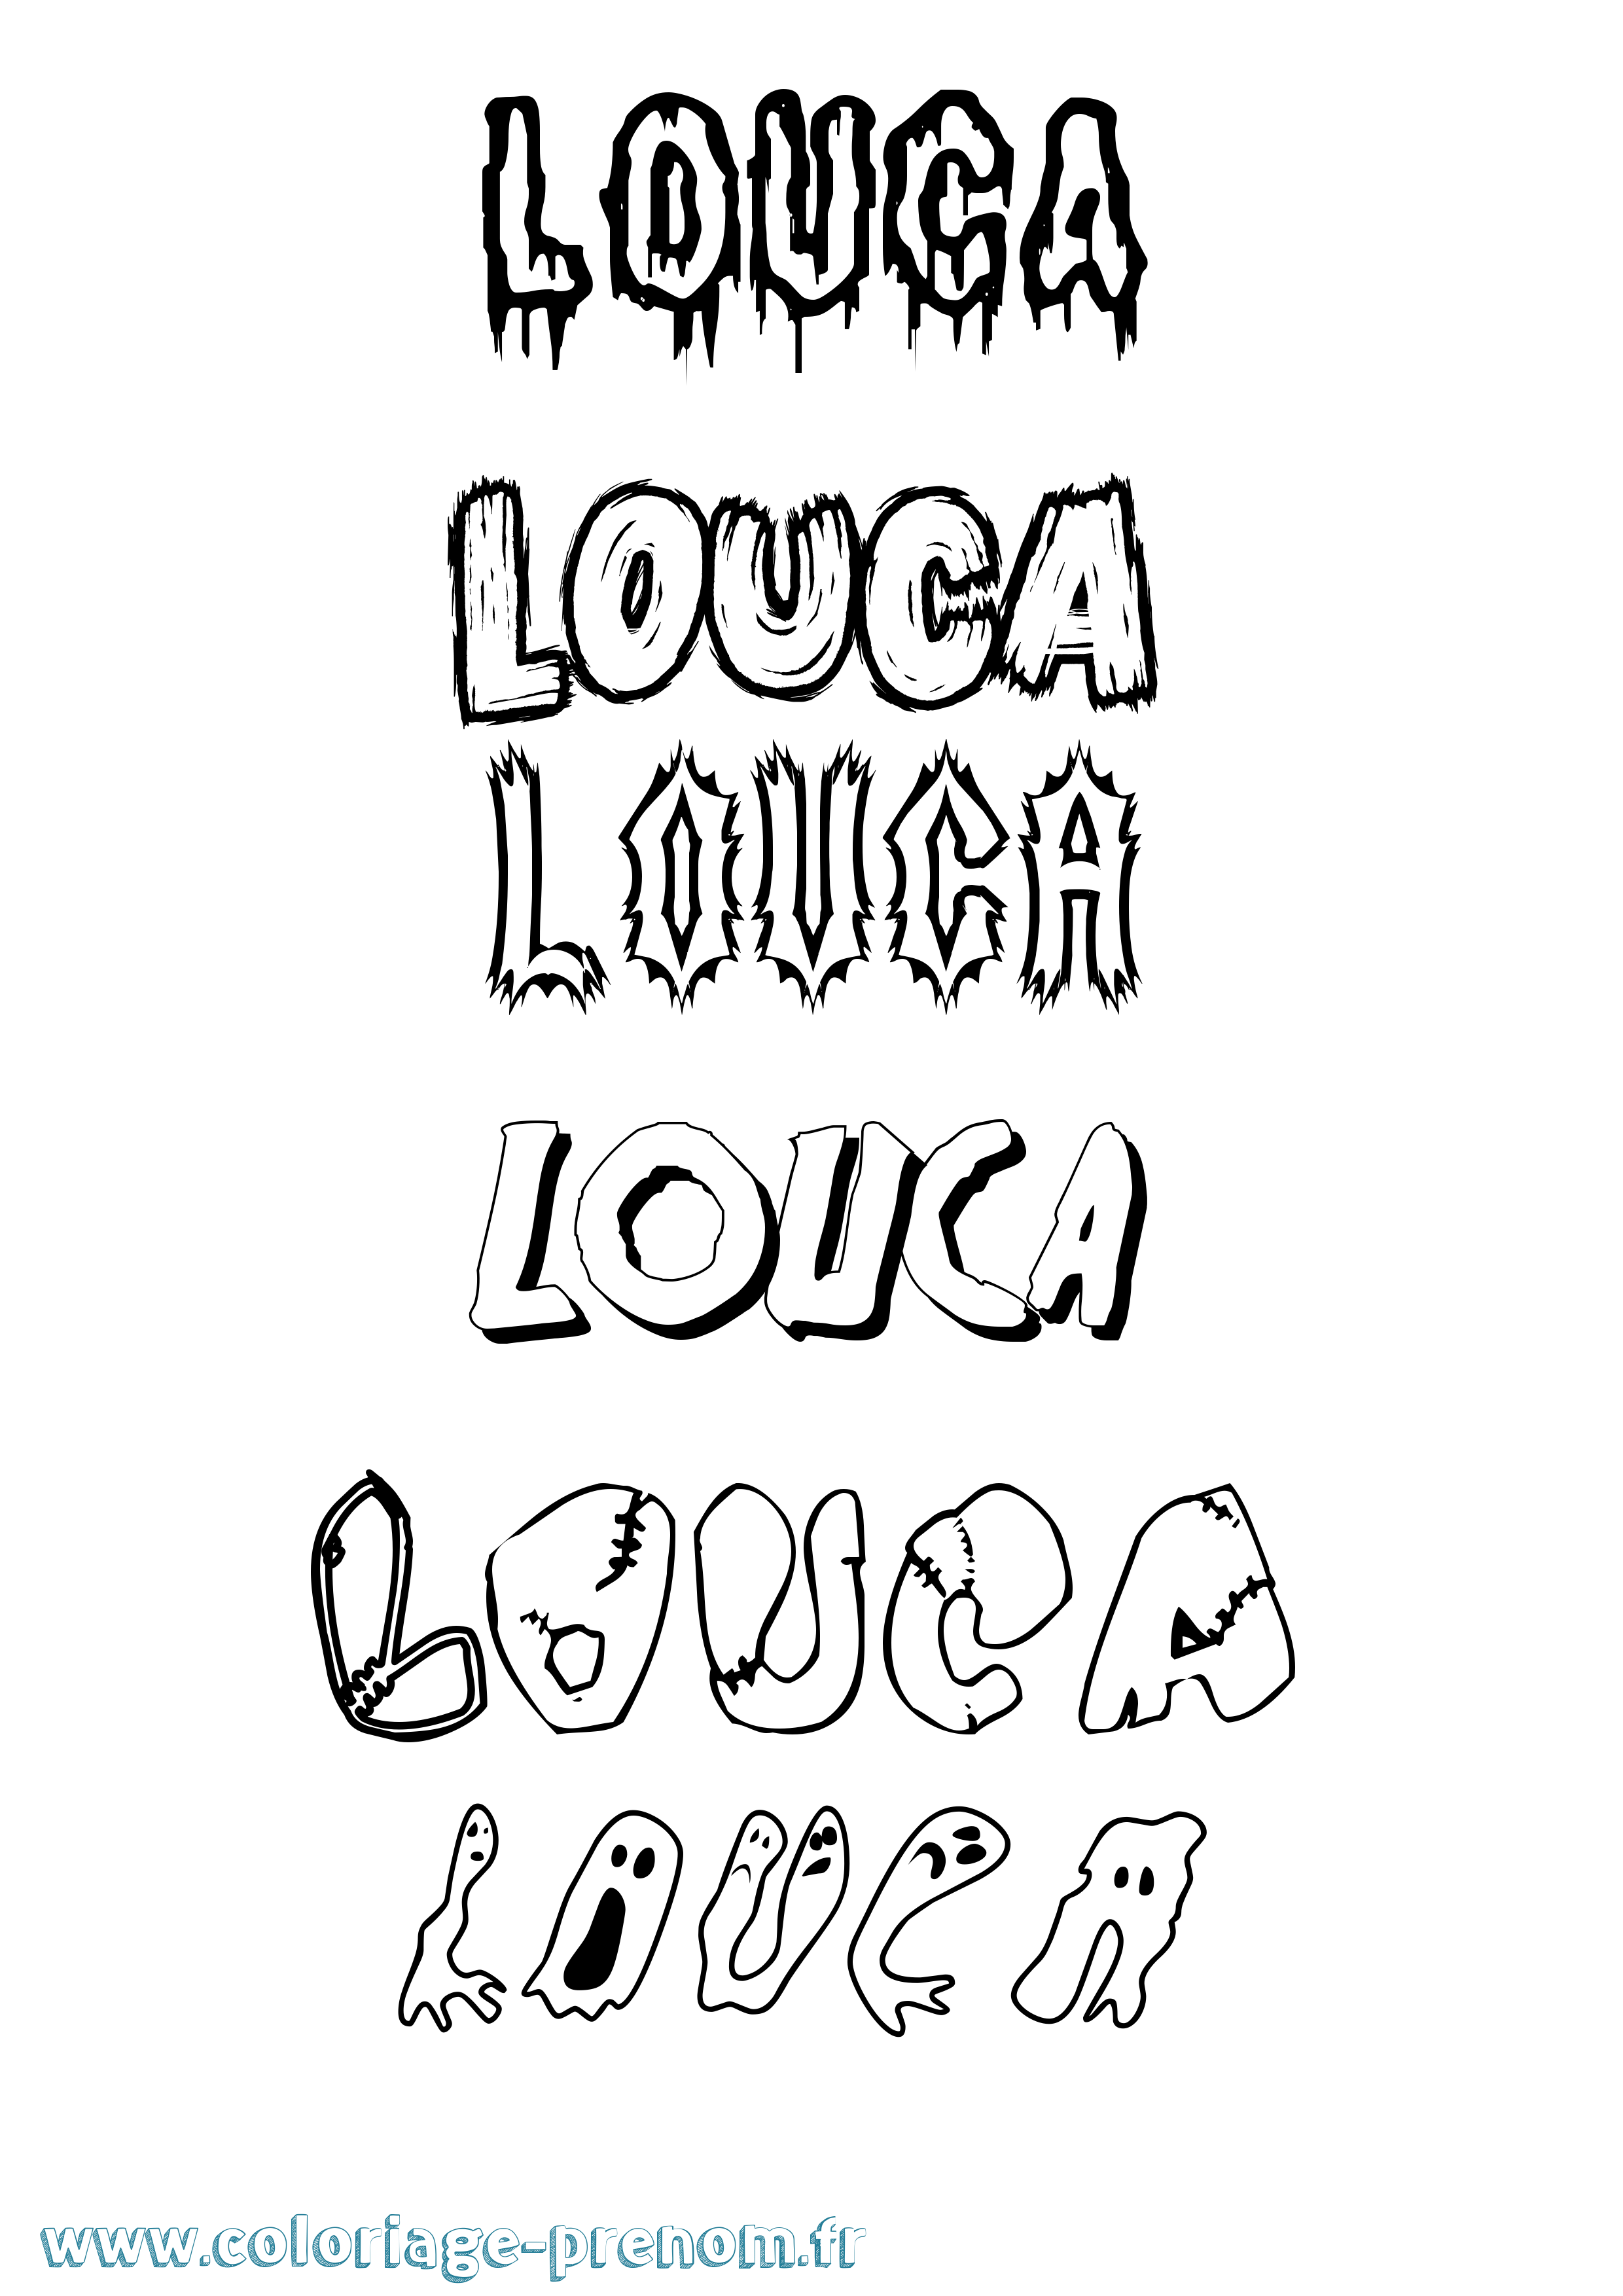 Coloriage prénom Louca